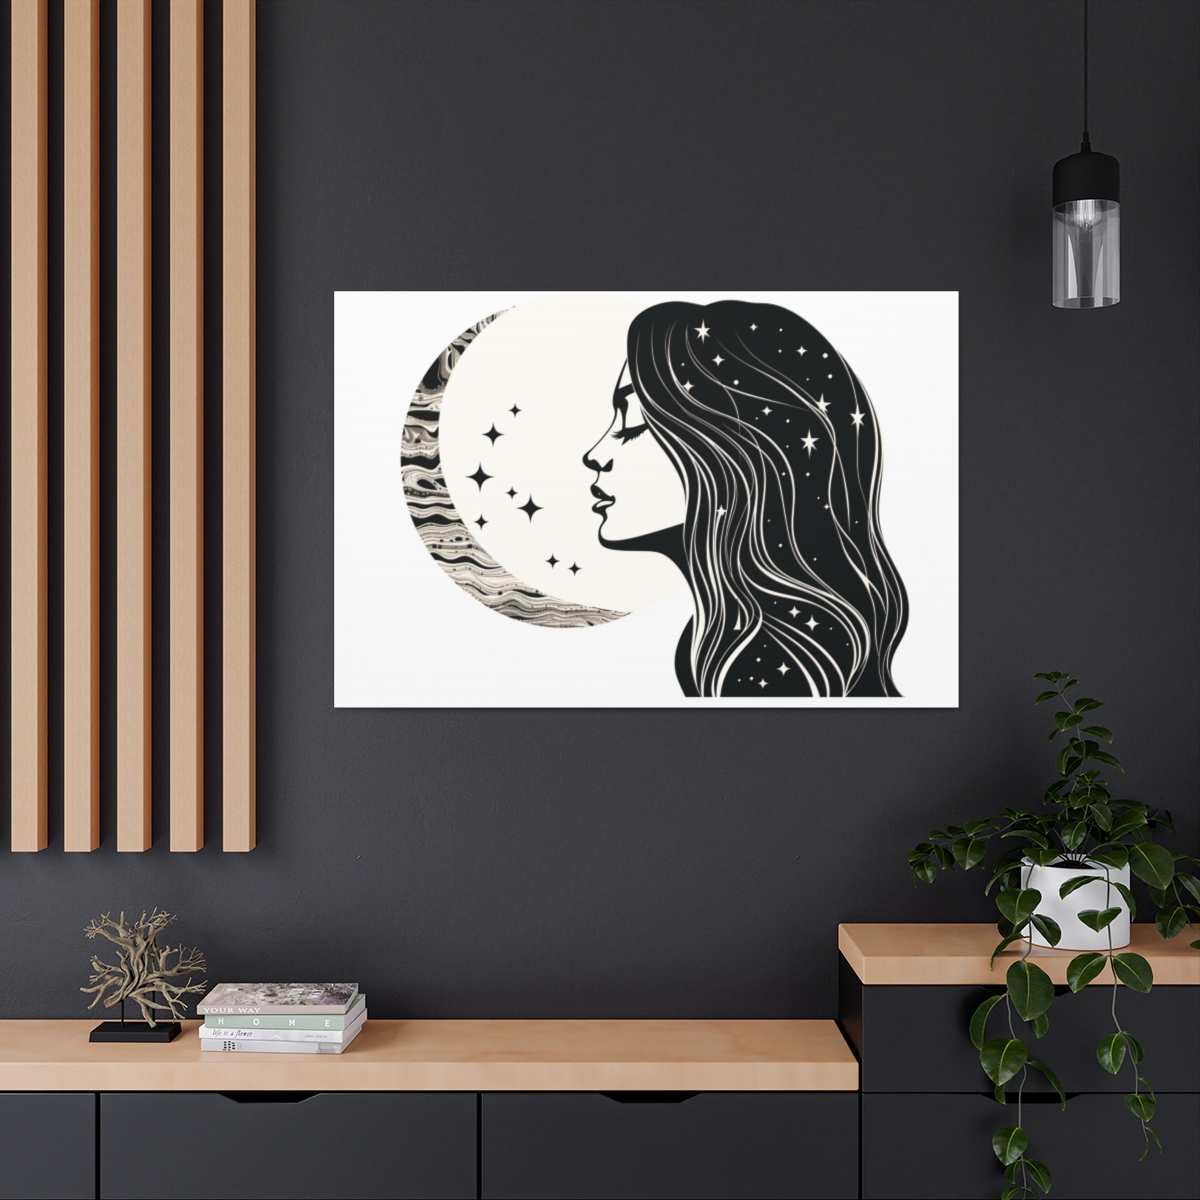 Boho Moon Art: The Tender Kiss